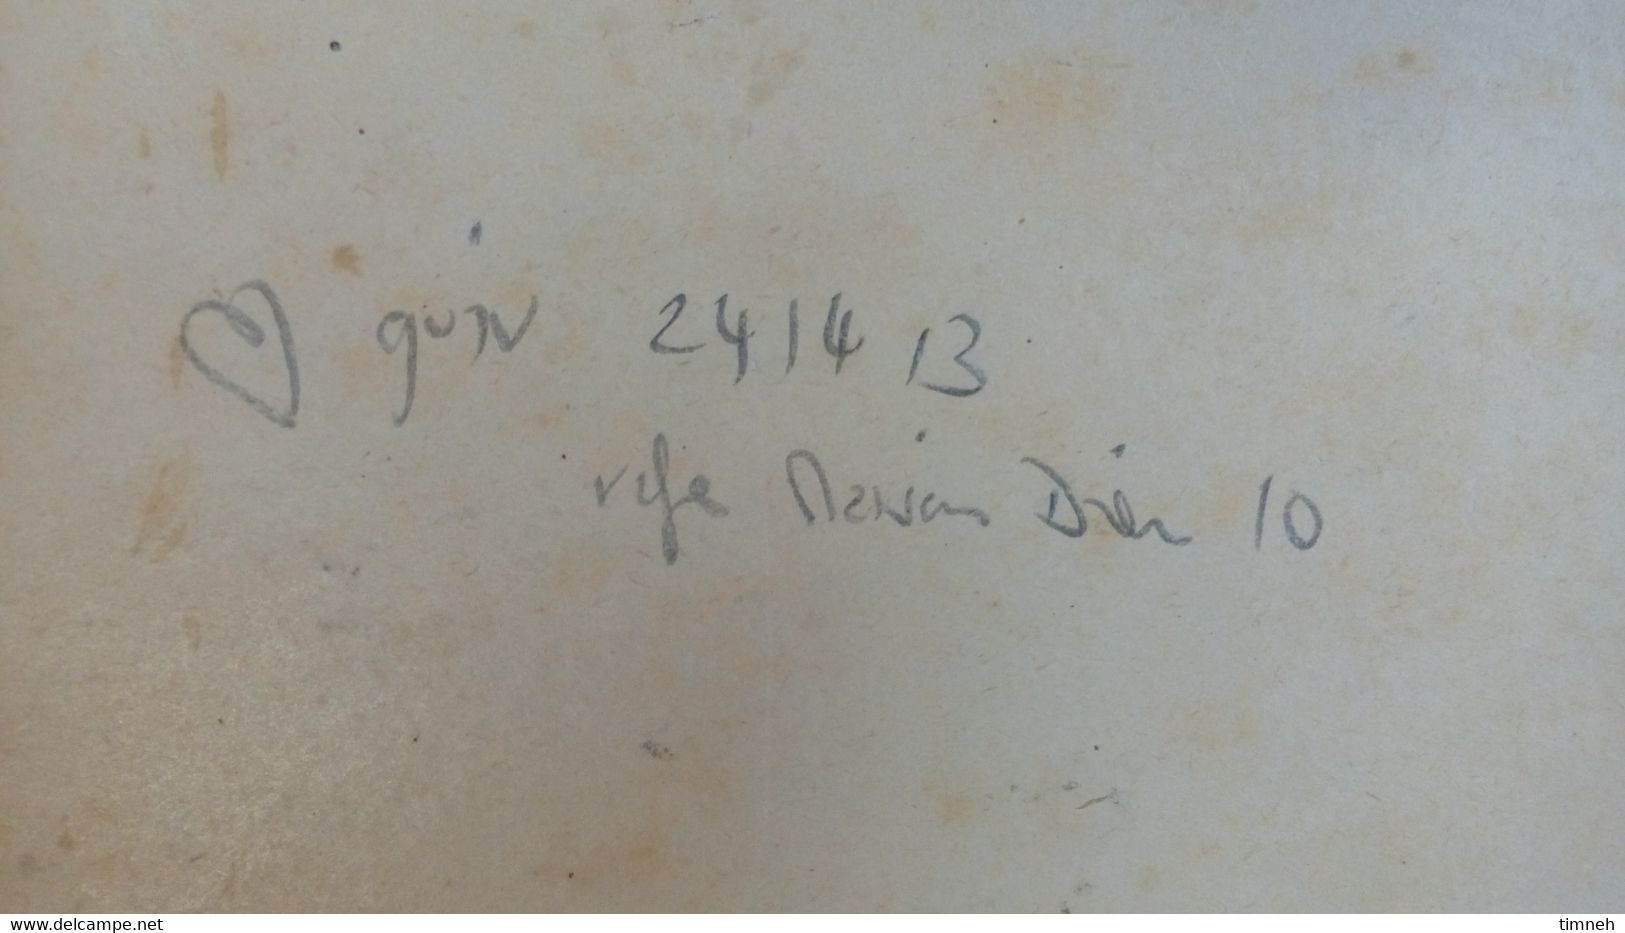 CORBIGNY - ABBAYE SAINT LEONARD - signé - 1924 - 46cmx33cm - HUILE toile & carton sans cadre ENCADREMENT GUYONNET NEVERS